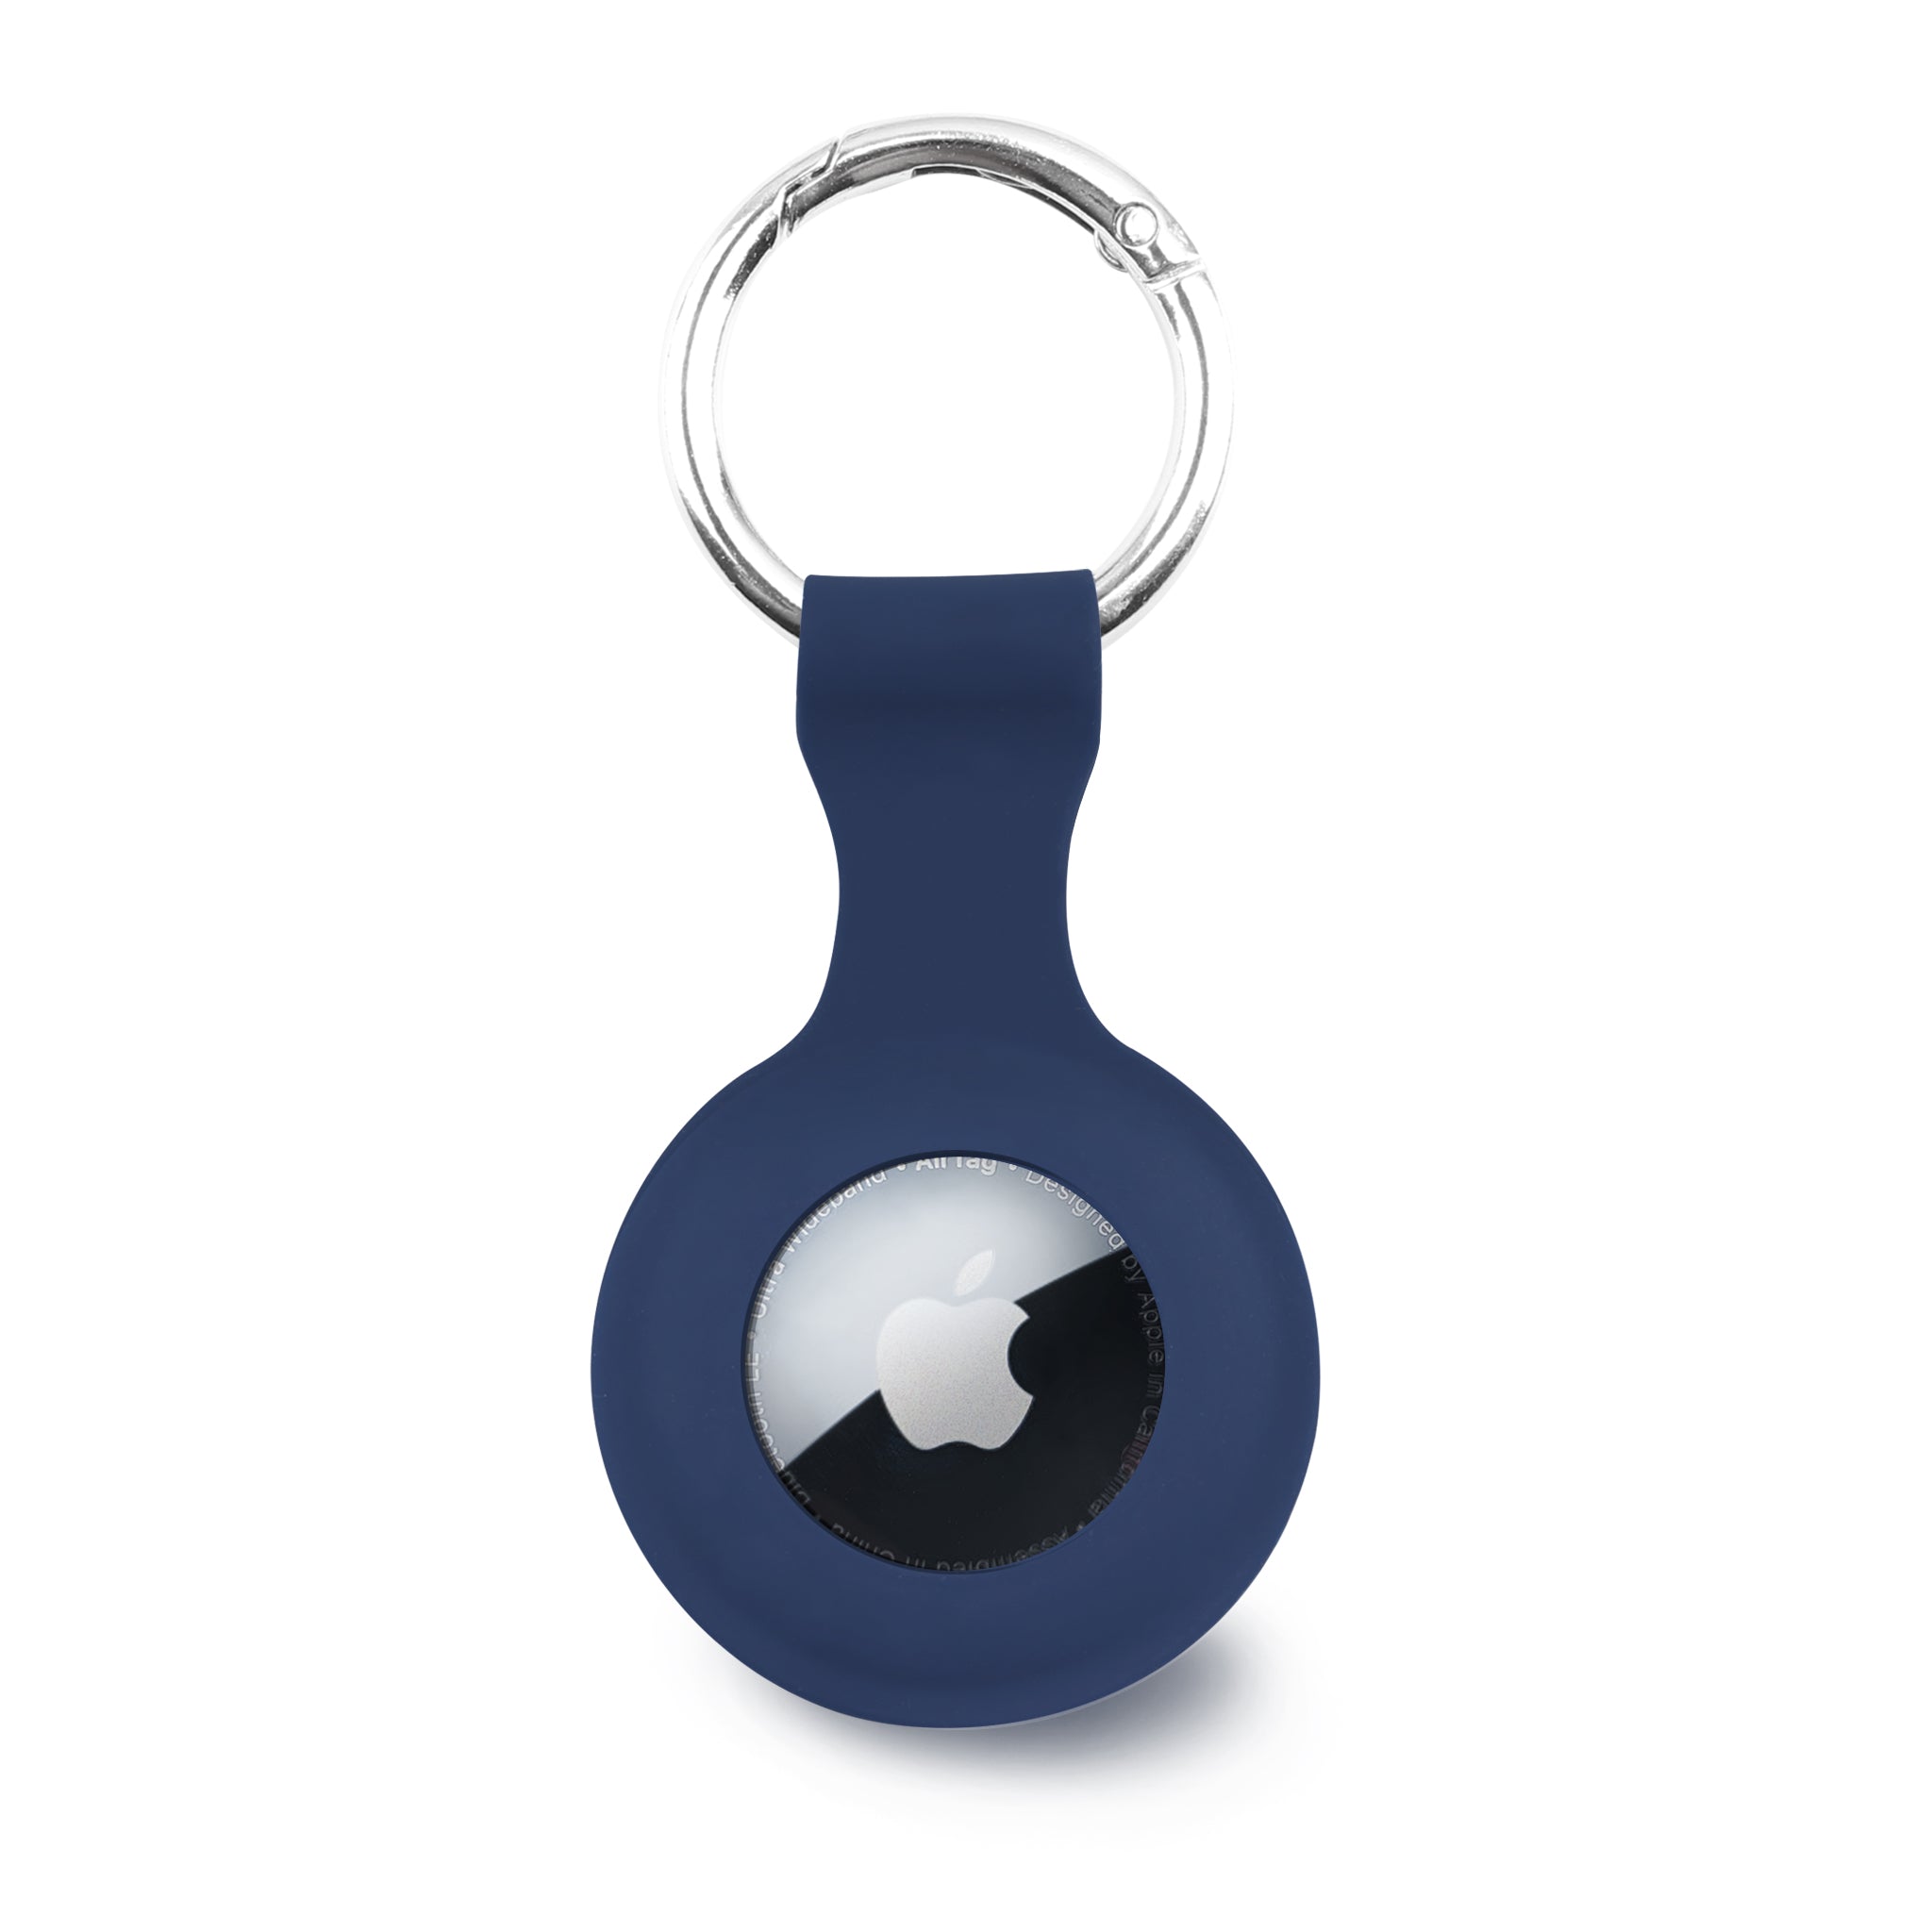 Porte-clés Airtag, étui Airtag avec porte-clés, porte-étiquettes de  protection en métal compatible avec Apple Airtag (sans Airtag)